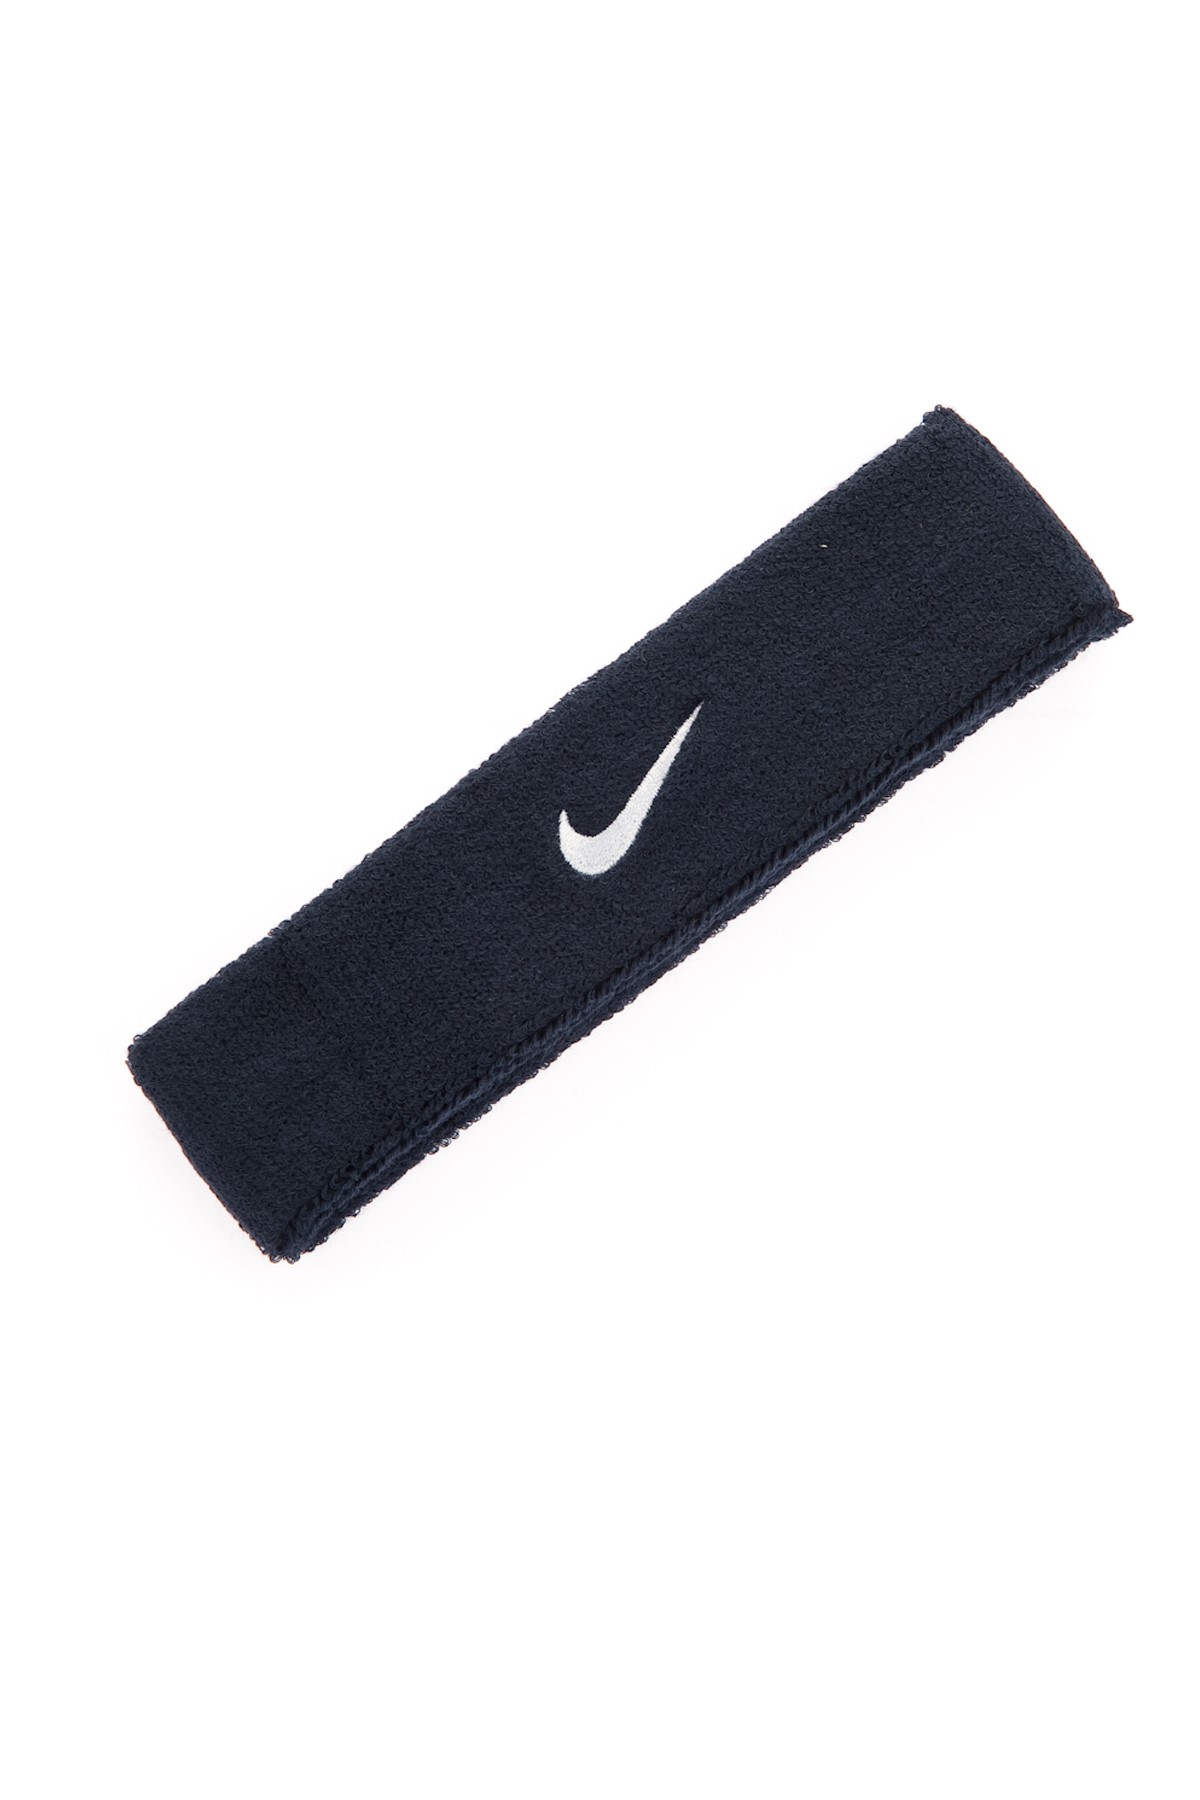 Nike Swoosh Lacivert Saç Bandı